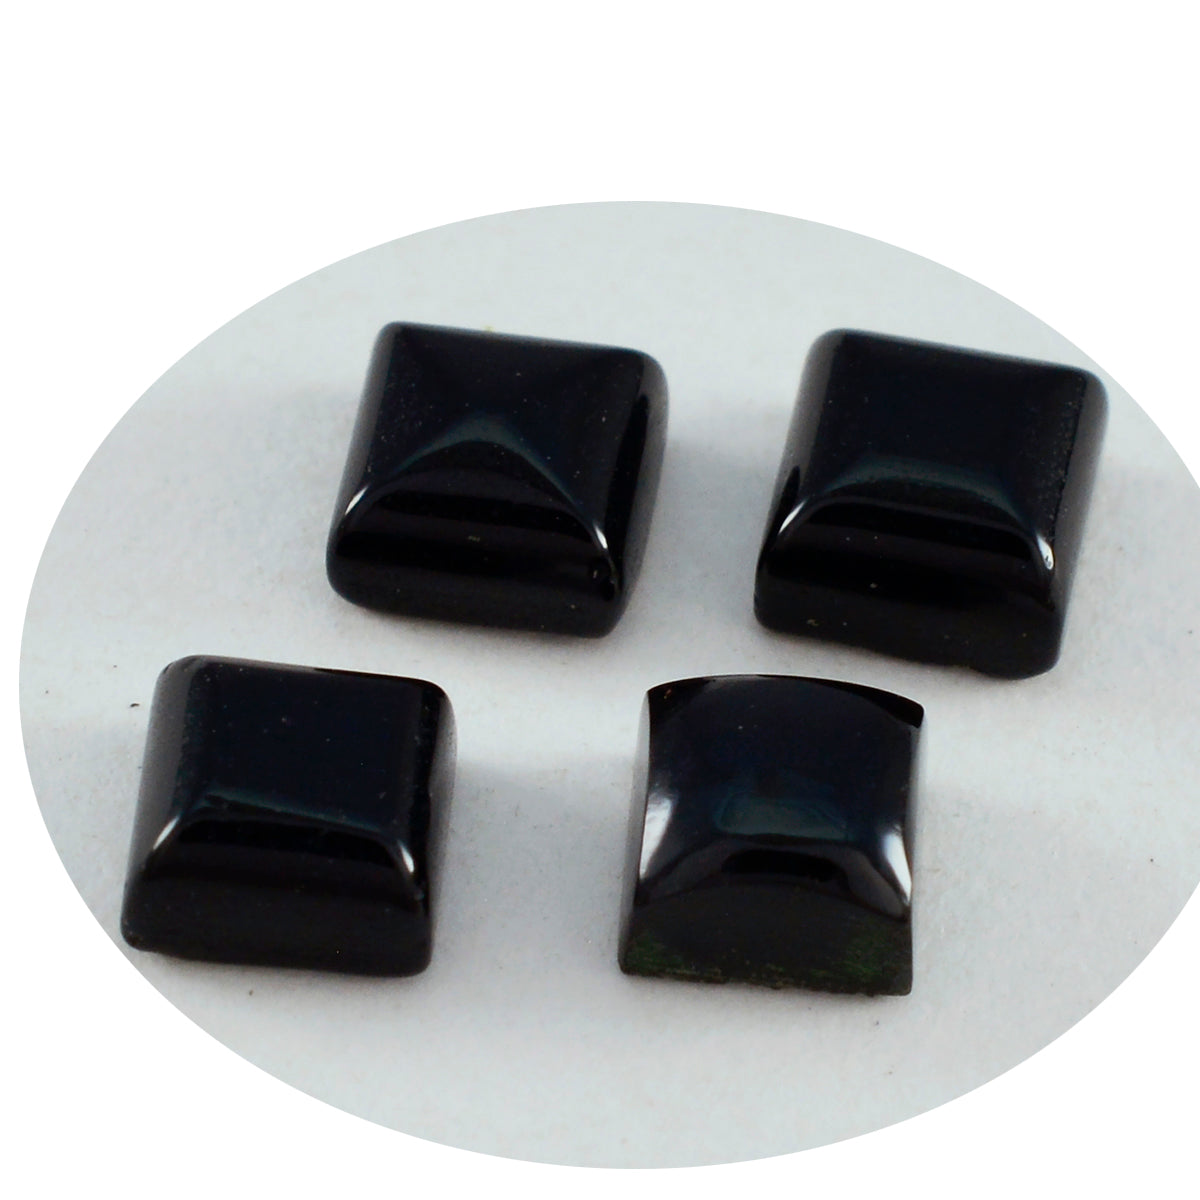 Riyogems 1 pieza cabujón de ónix negro 10x10 mm forma cuadrada piedra preciosa suelta de calidad sorprendente